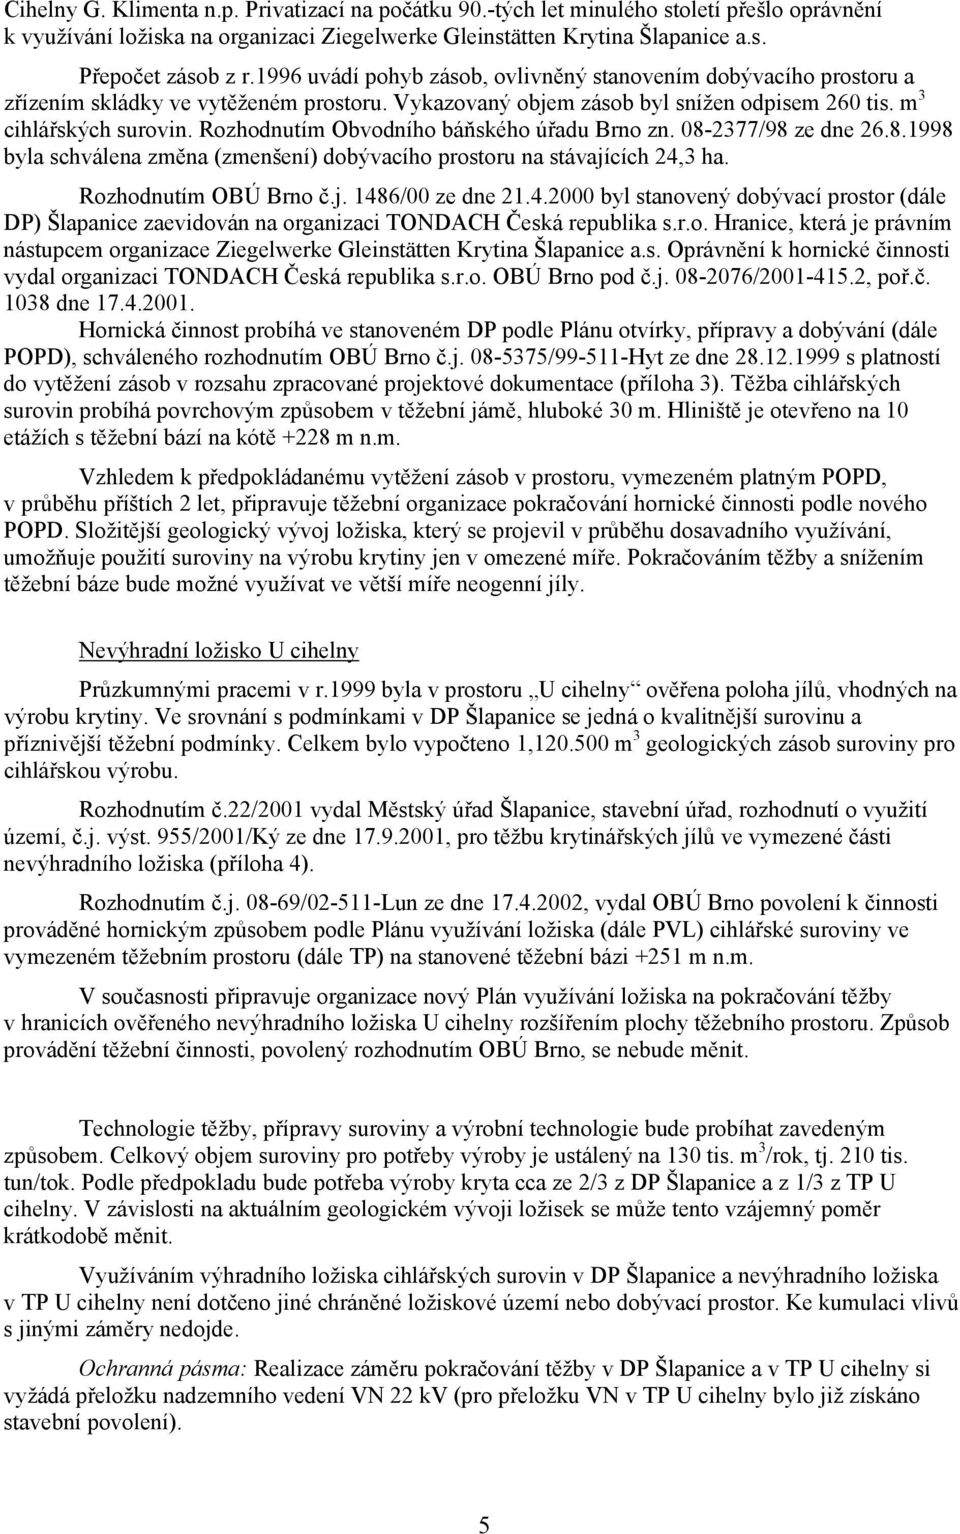 Rozhodnutím Obvodního báňského úřadu Brno zn. 08-2377/98 ze dne 26.8.1998 byla schválena změna (zmenšení) dobývacího prostoru na stávajících 24,